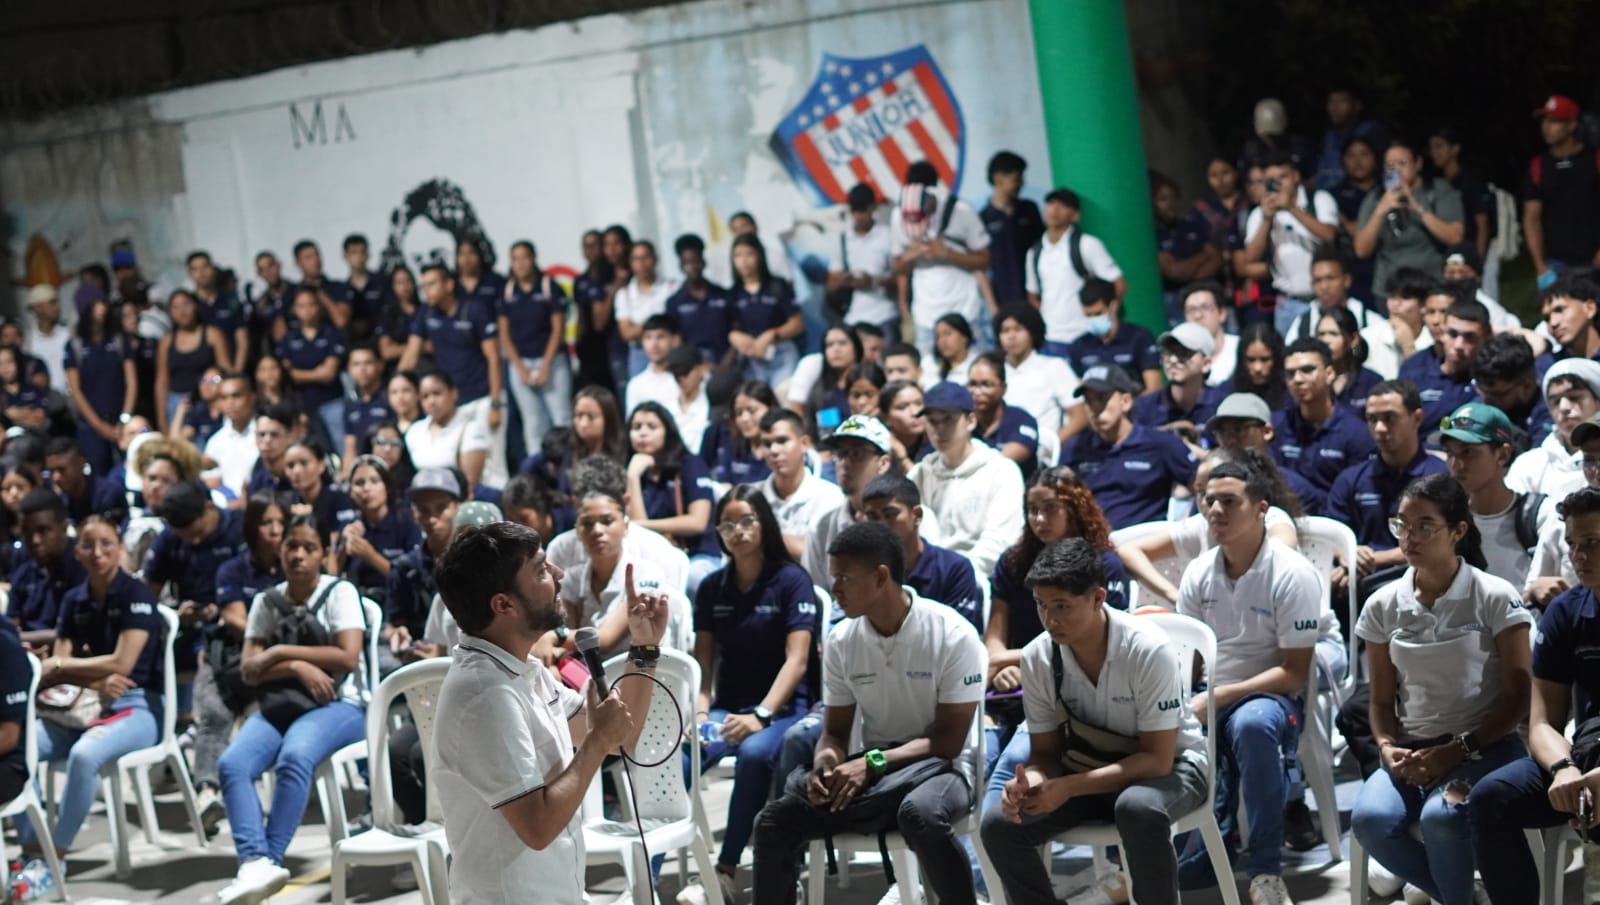 En encuentro con becados de UAB, Pumarejo ratifica la apuesta por más oportunidades para la juventud barranquillera